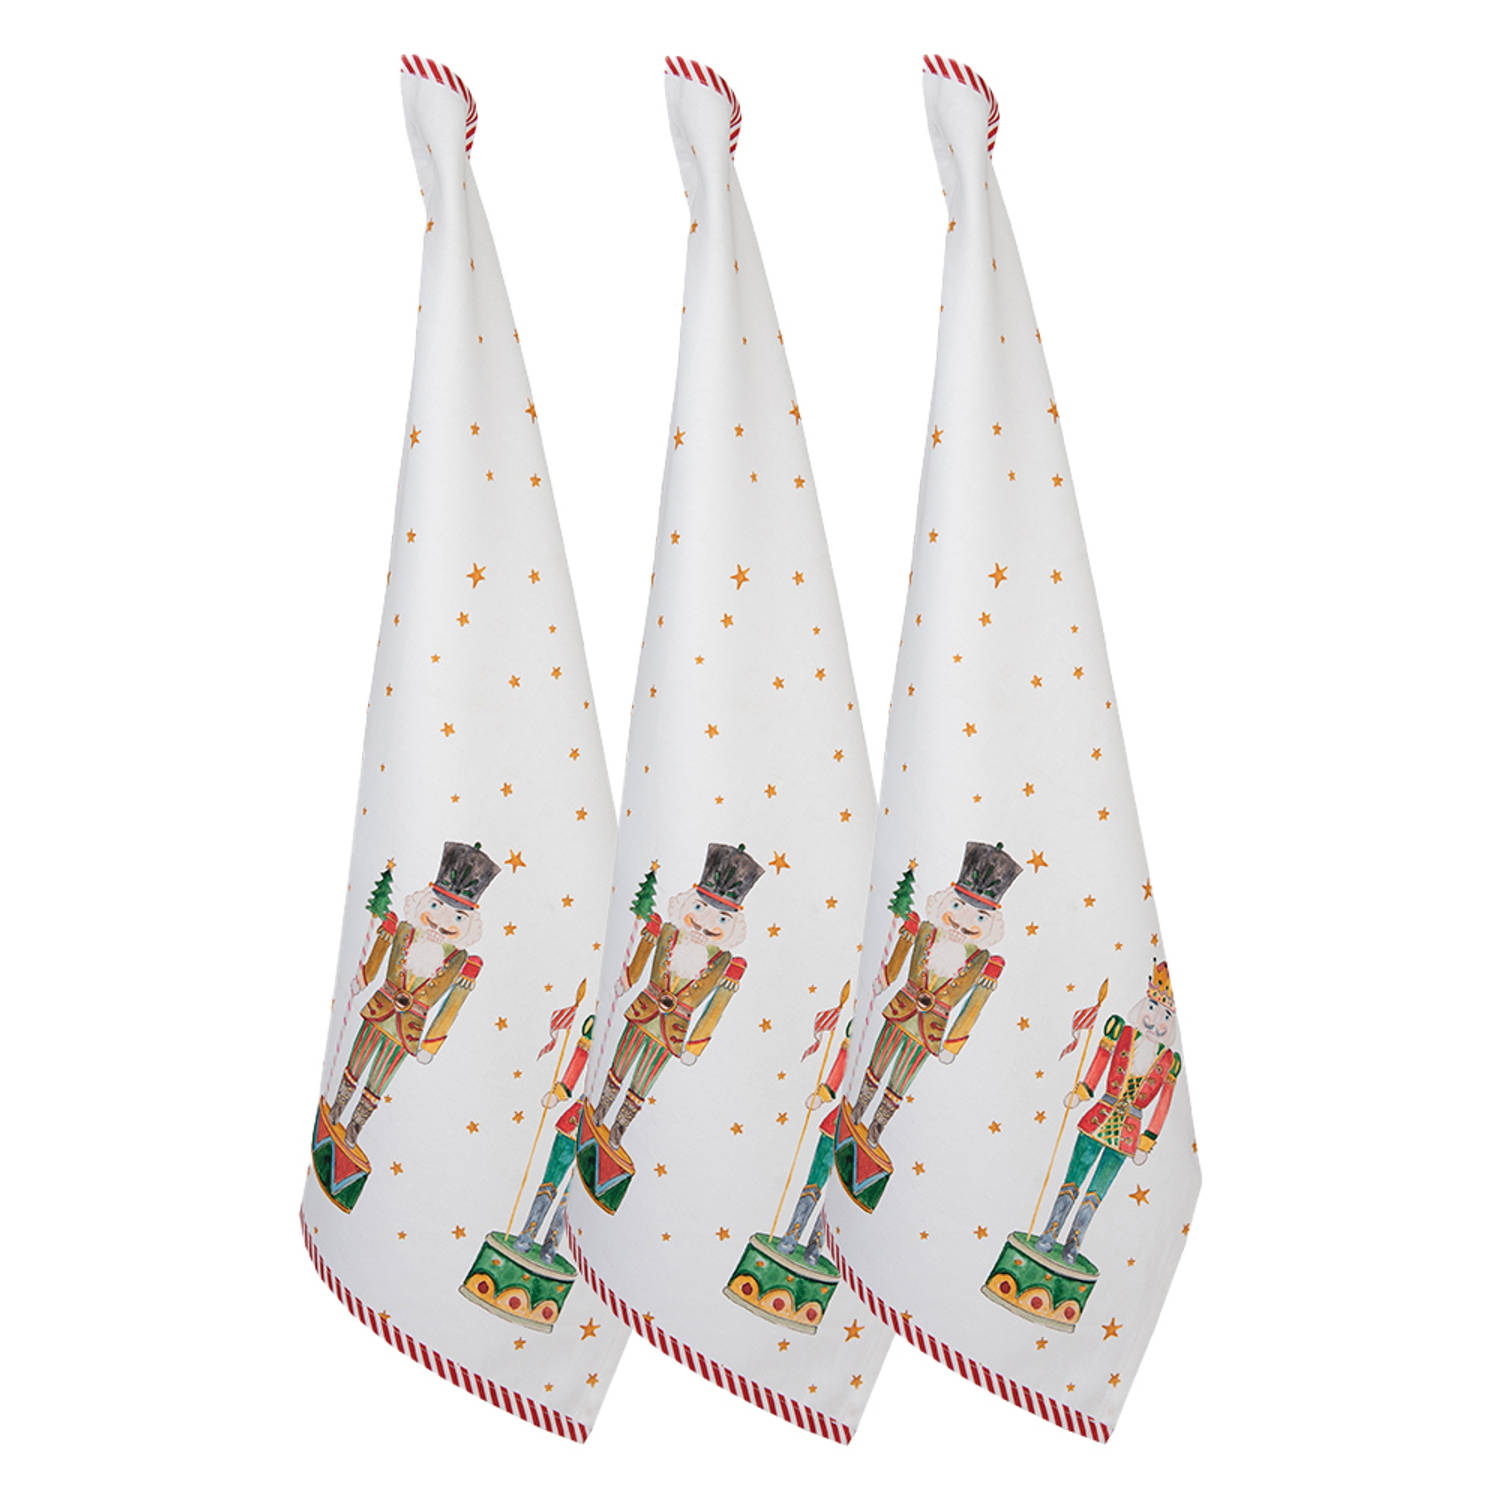 HAES DECO - Set van 3 Theedoeken - formaat 50x70 cm - kleuren Wit / Rood / Groen / Bruin - van 100% Katoen - Collectie: Happy Little Christmas - Kerst Theedoek, Keukendoek voor Ker